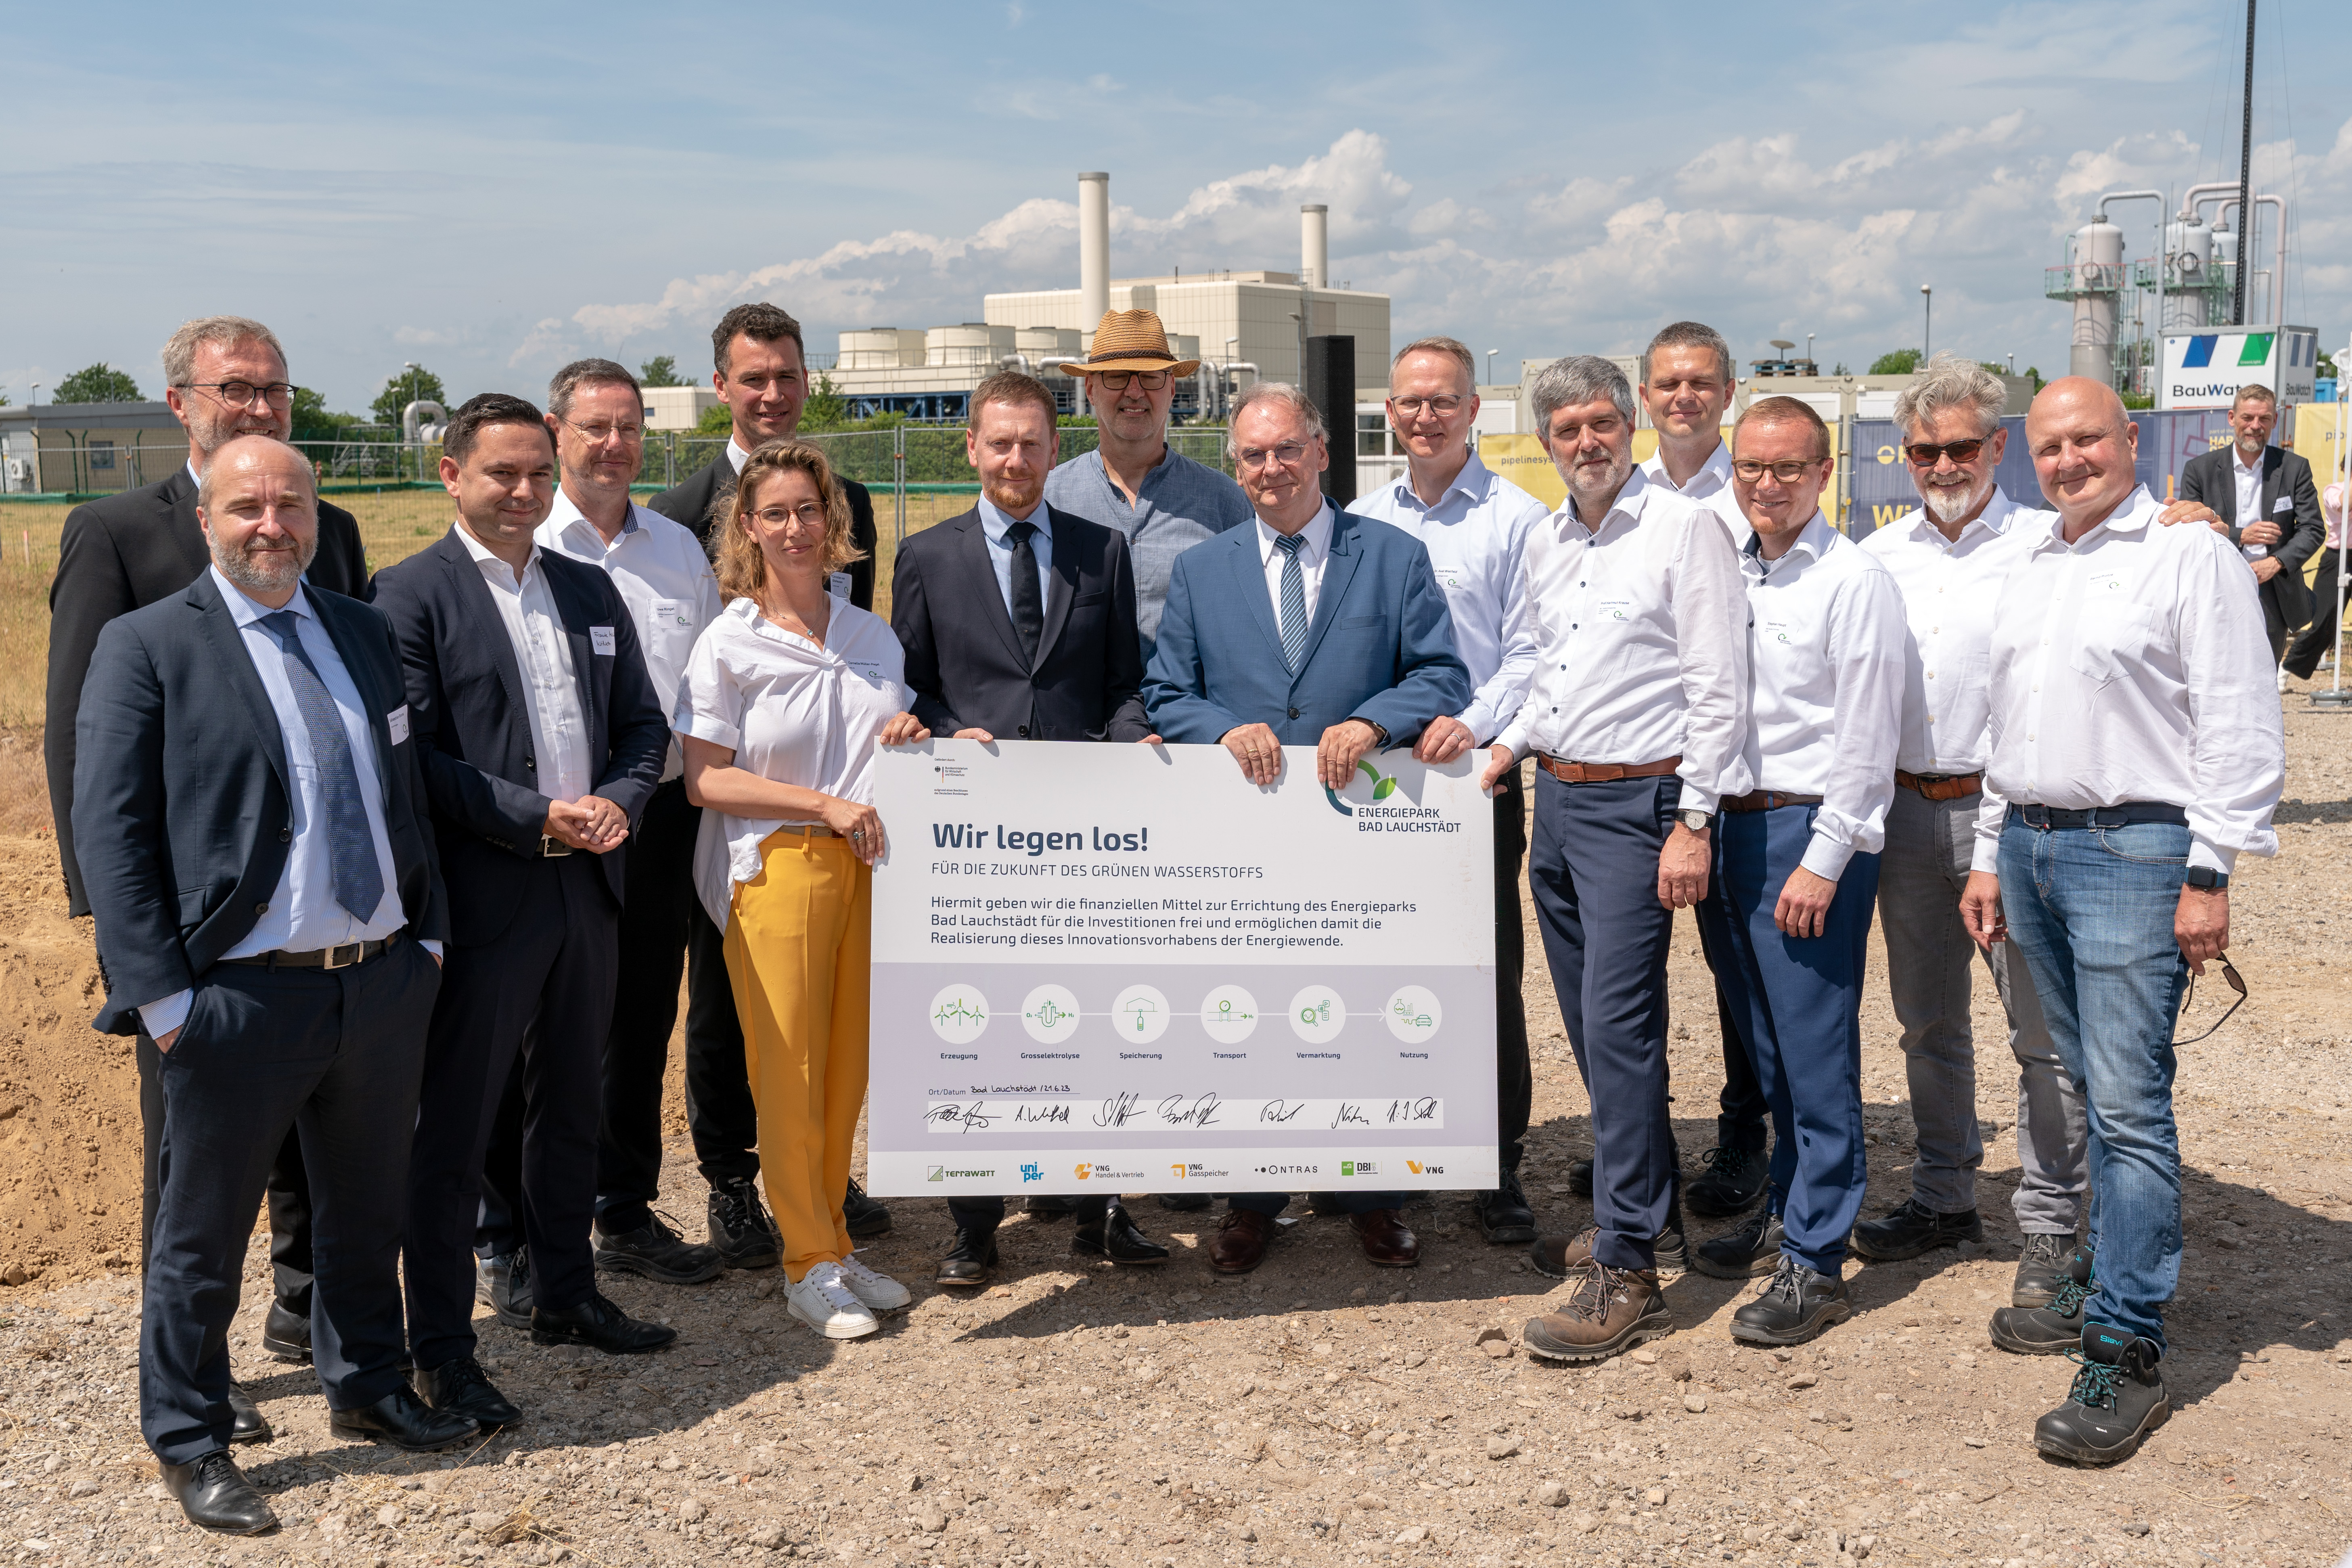 Gruppenbild mit finalem Investitionsbeschluss für den Energiepark Bad Lauchstädt